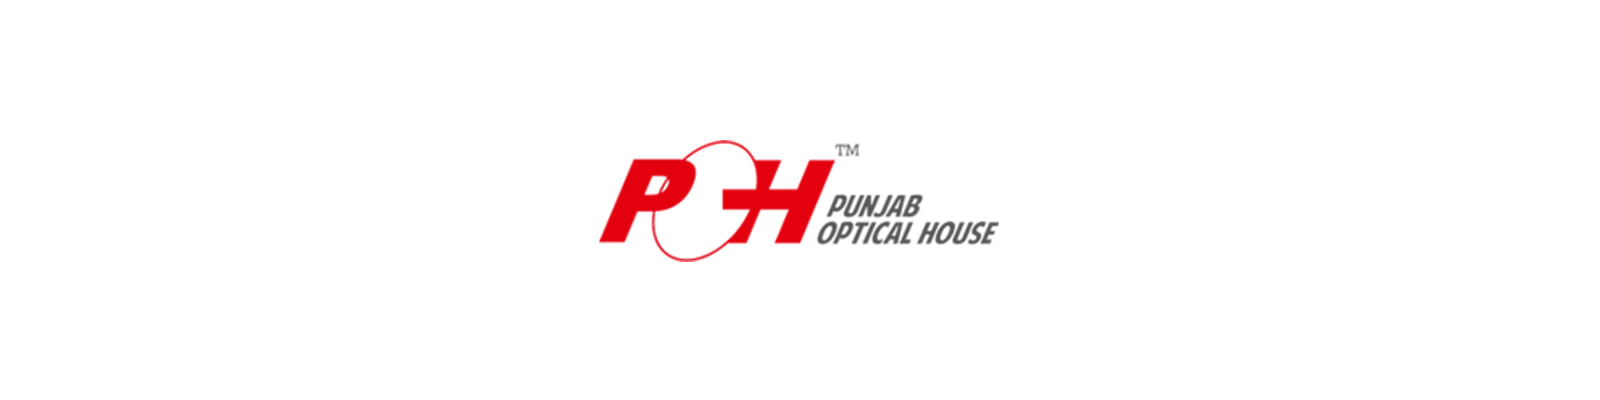 Punjab Optical House